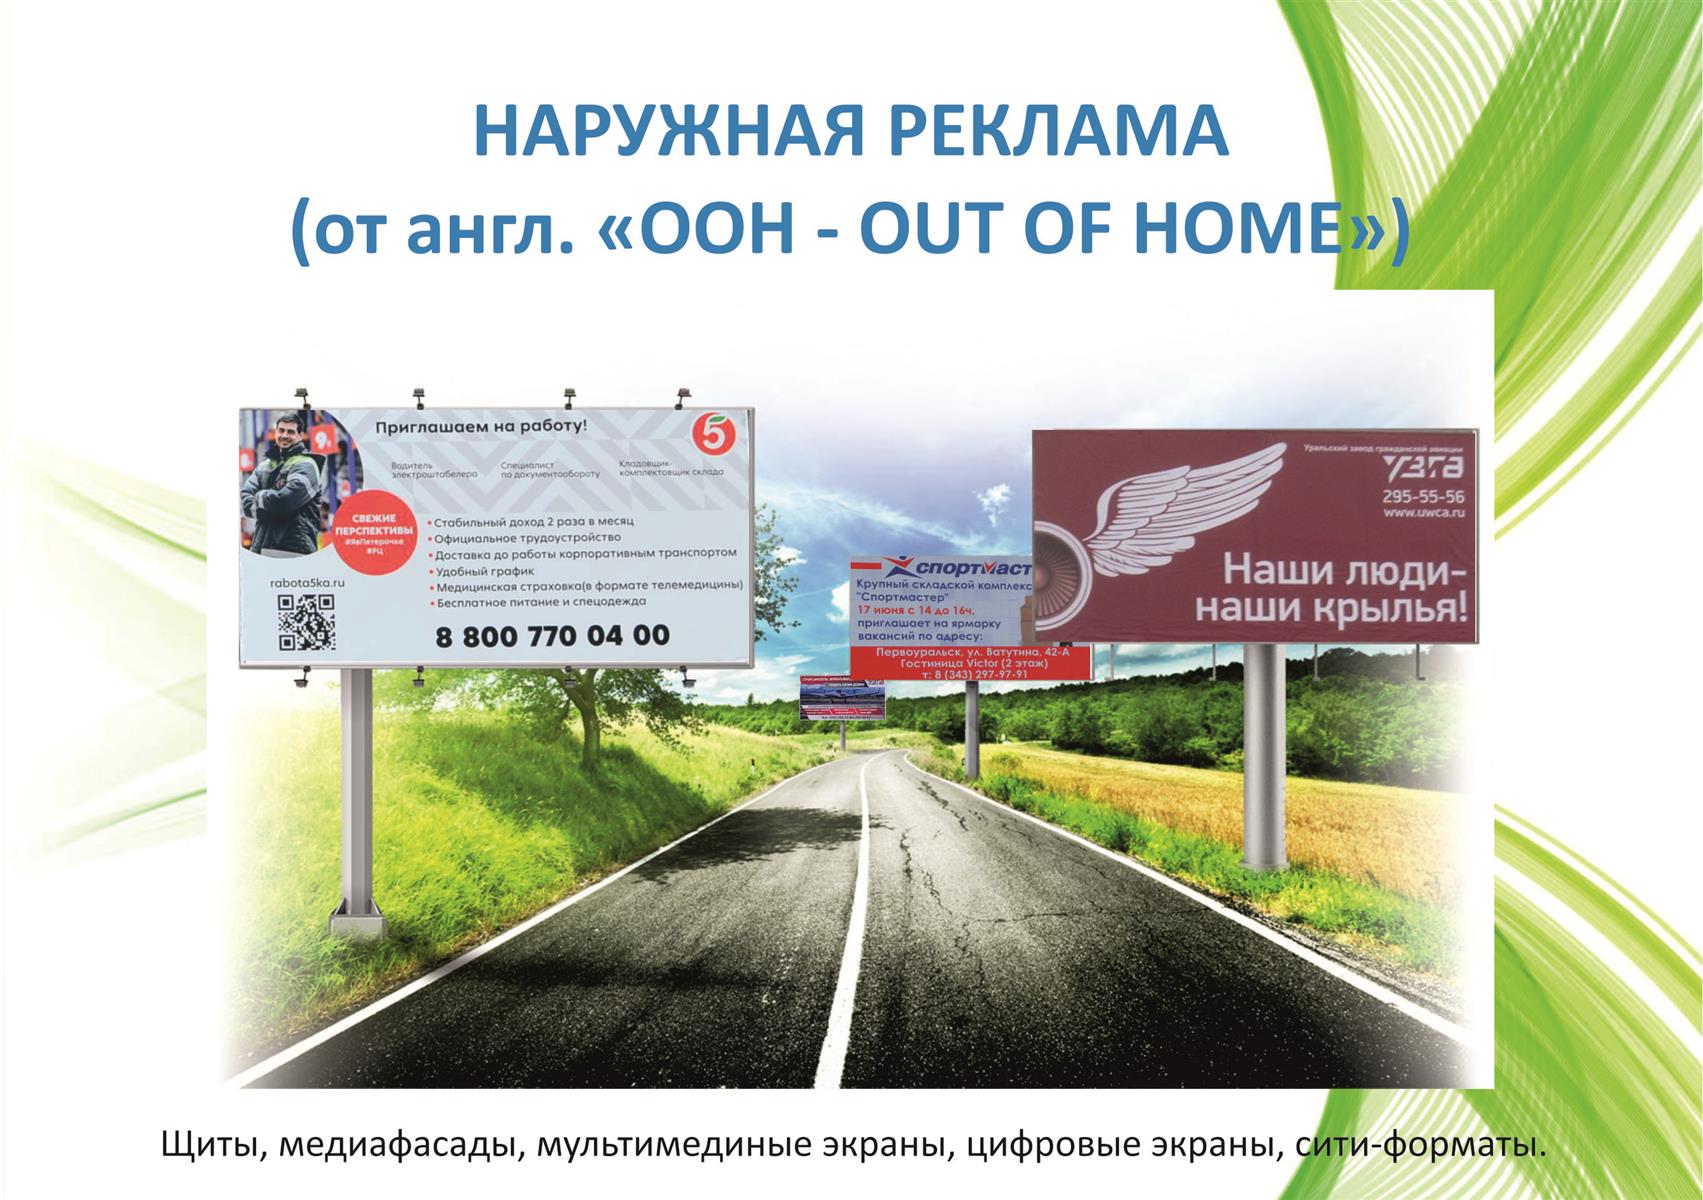 Наружная реклама ООН - OUT OF HOME (презентация)